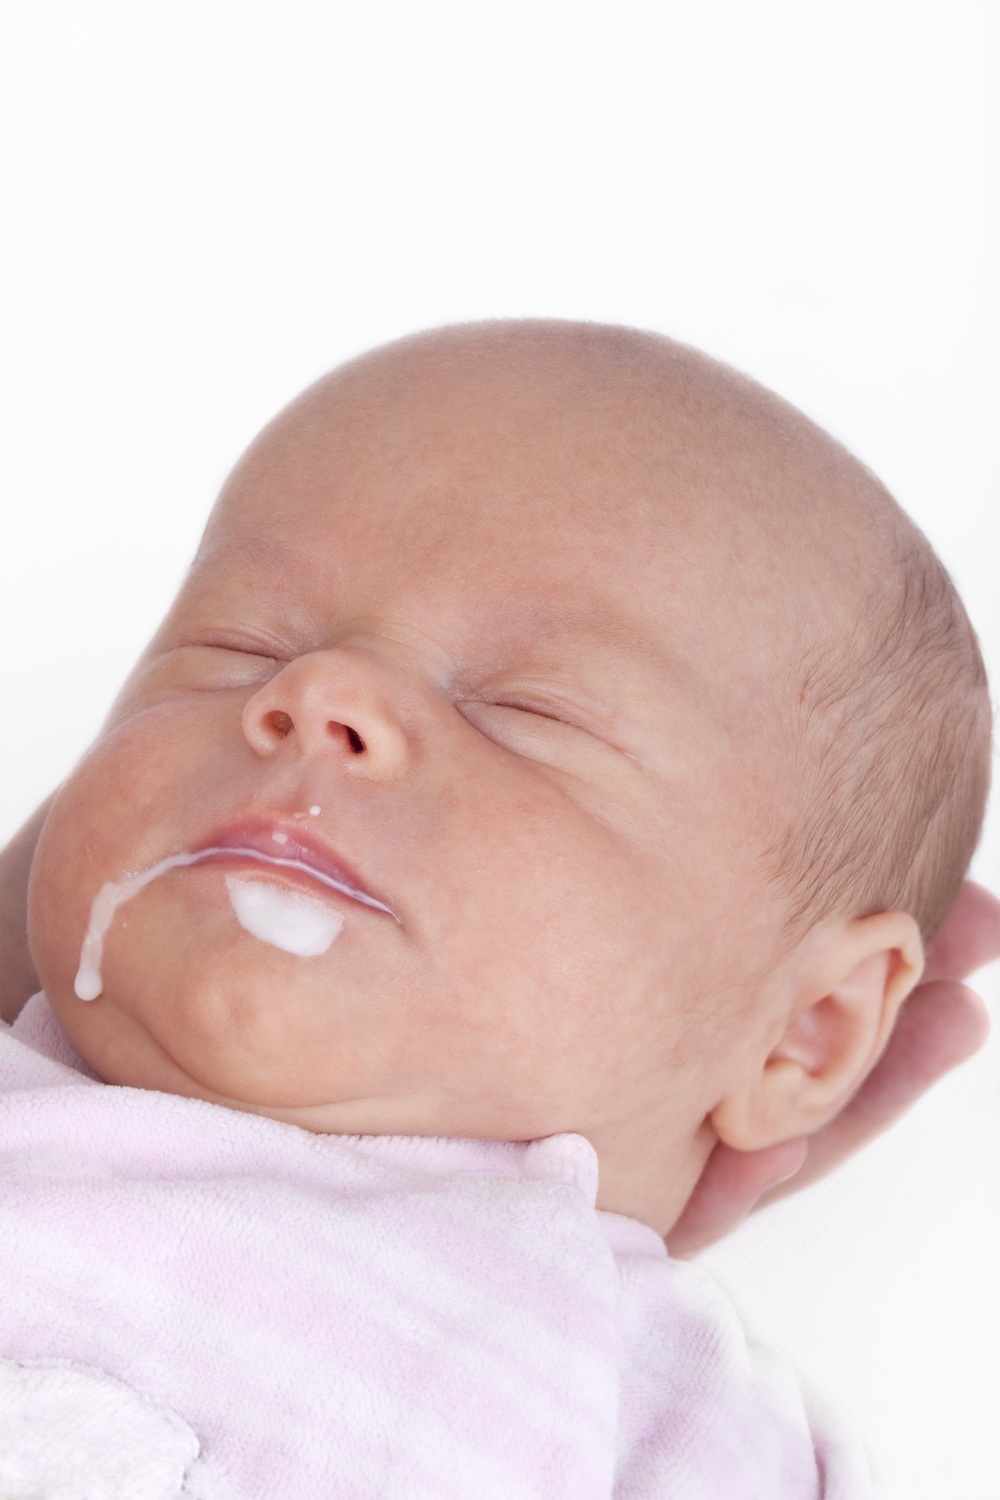 Bebê dormindo com leite gorfado na boca - foto: Dirk Ott/ShutterStock.com